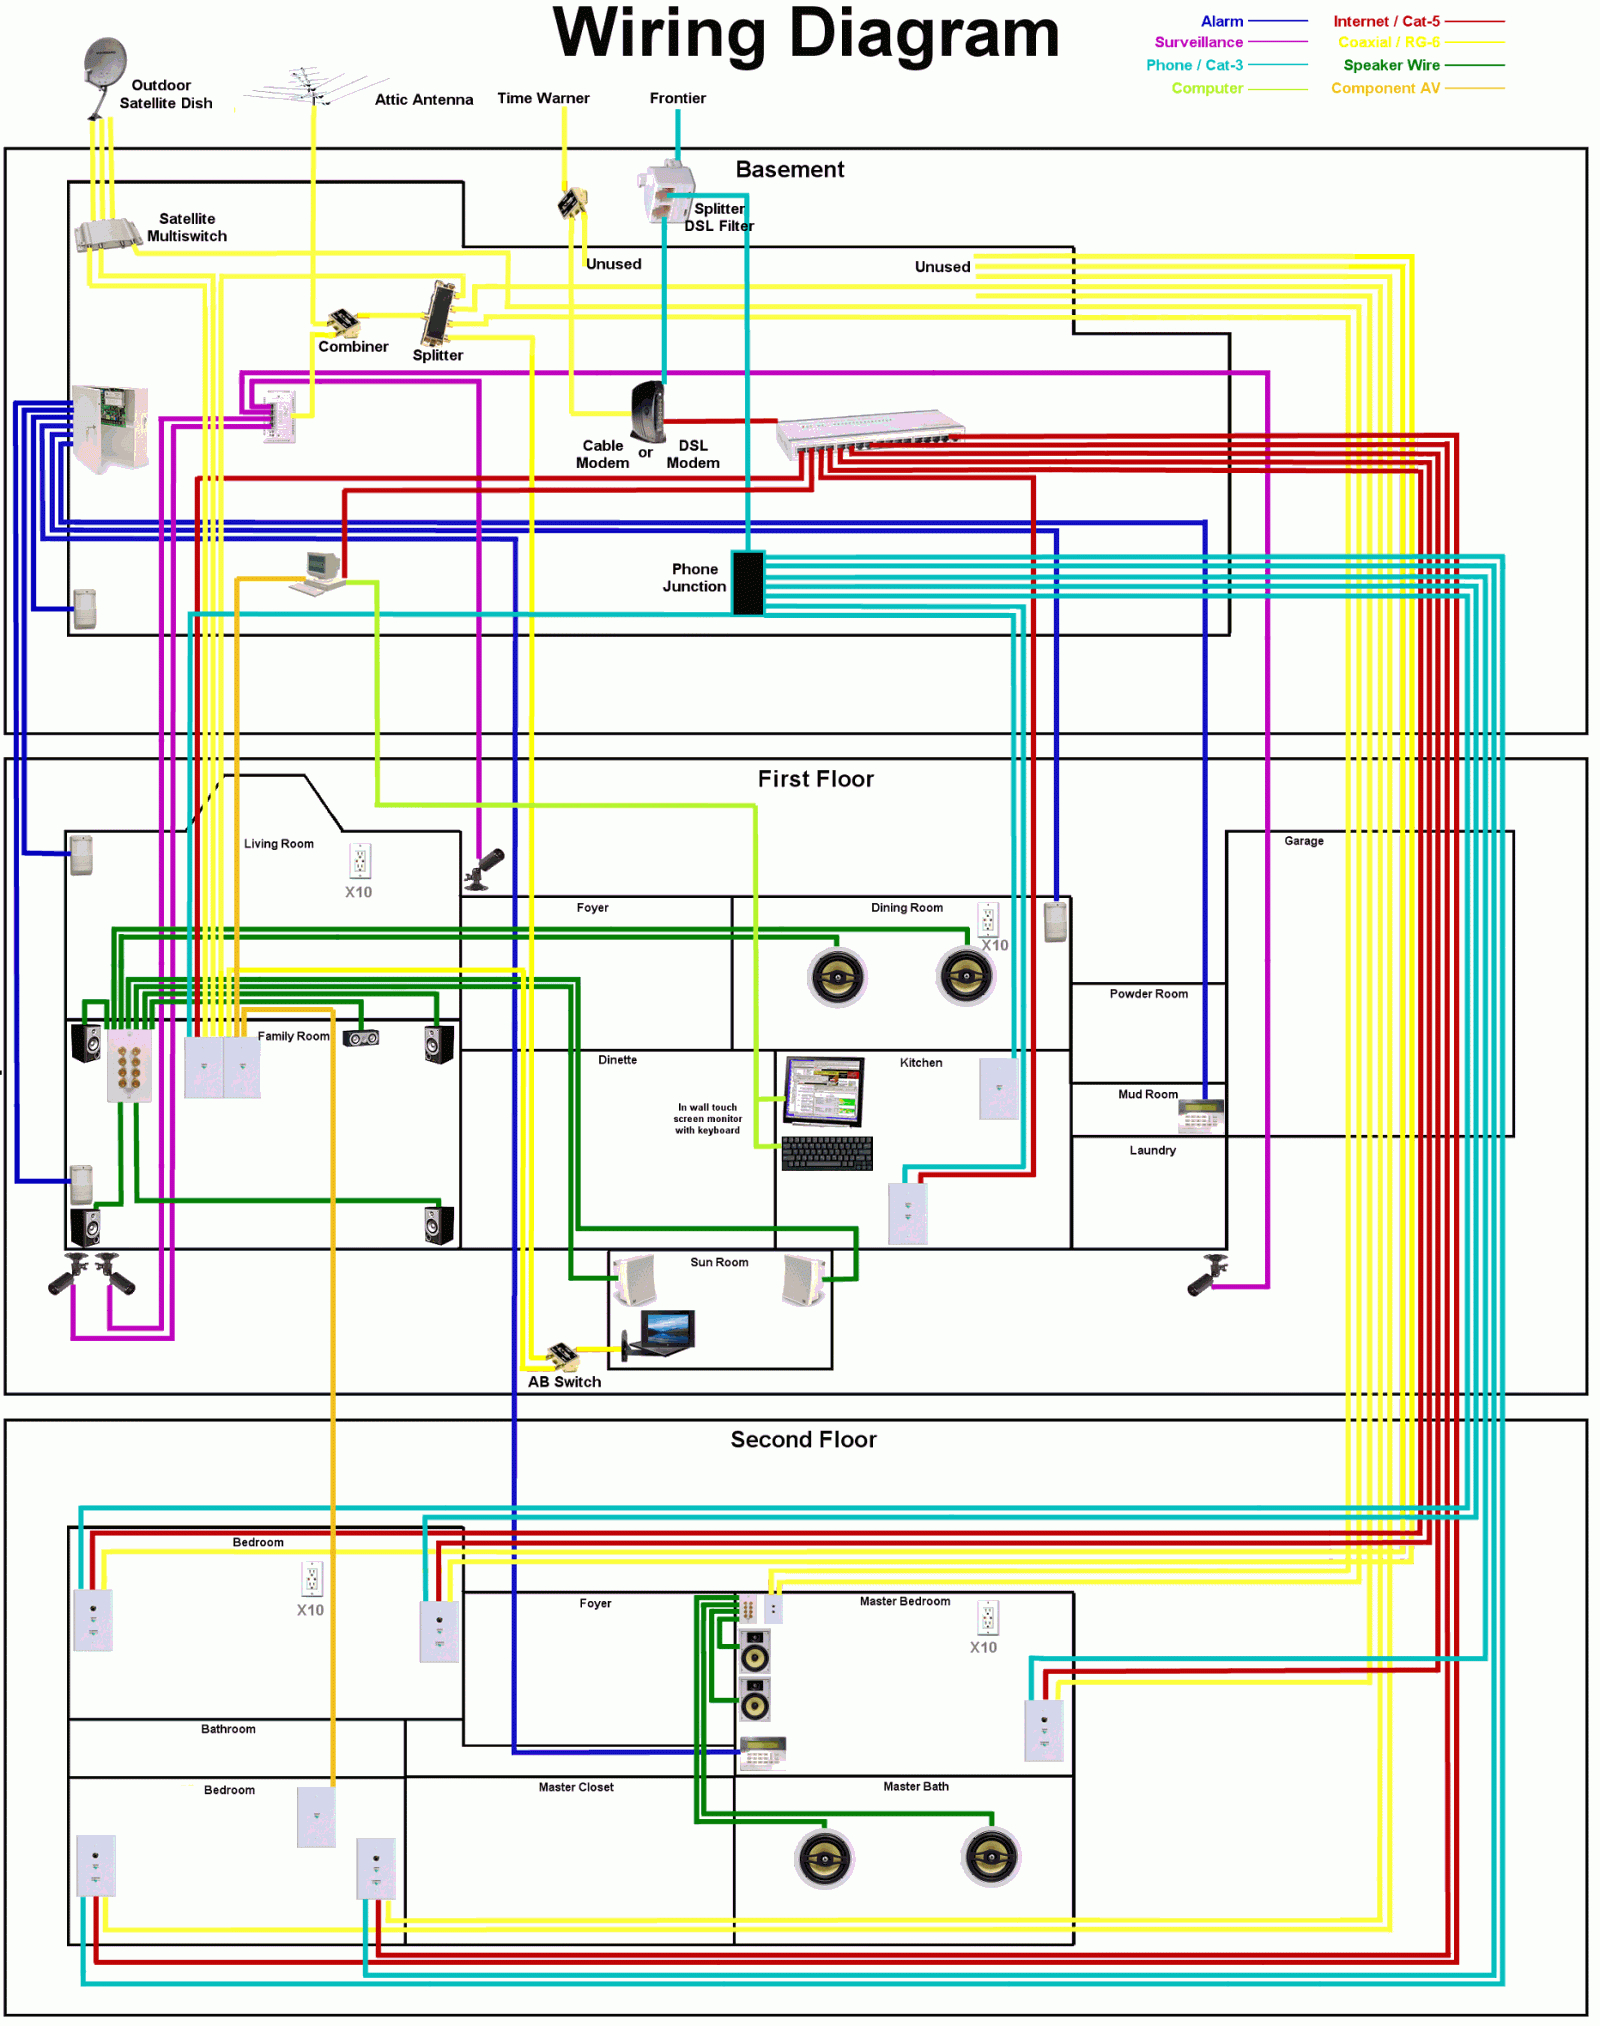 Circuit Diagram Maker Home Wiring Diagram Tool Wiring Diagrams